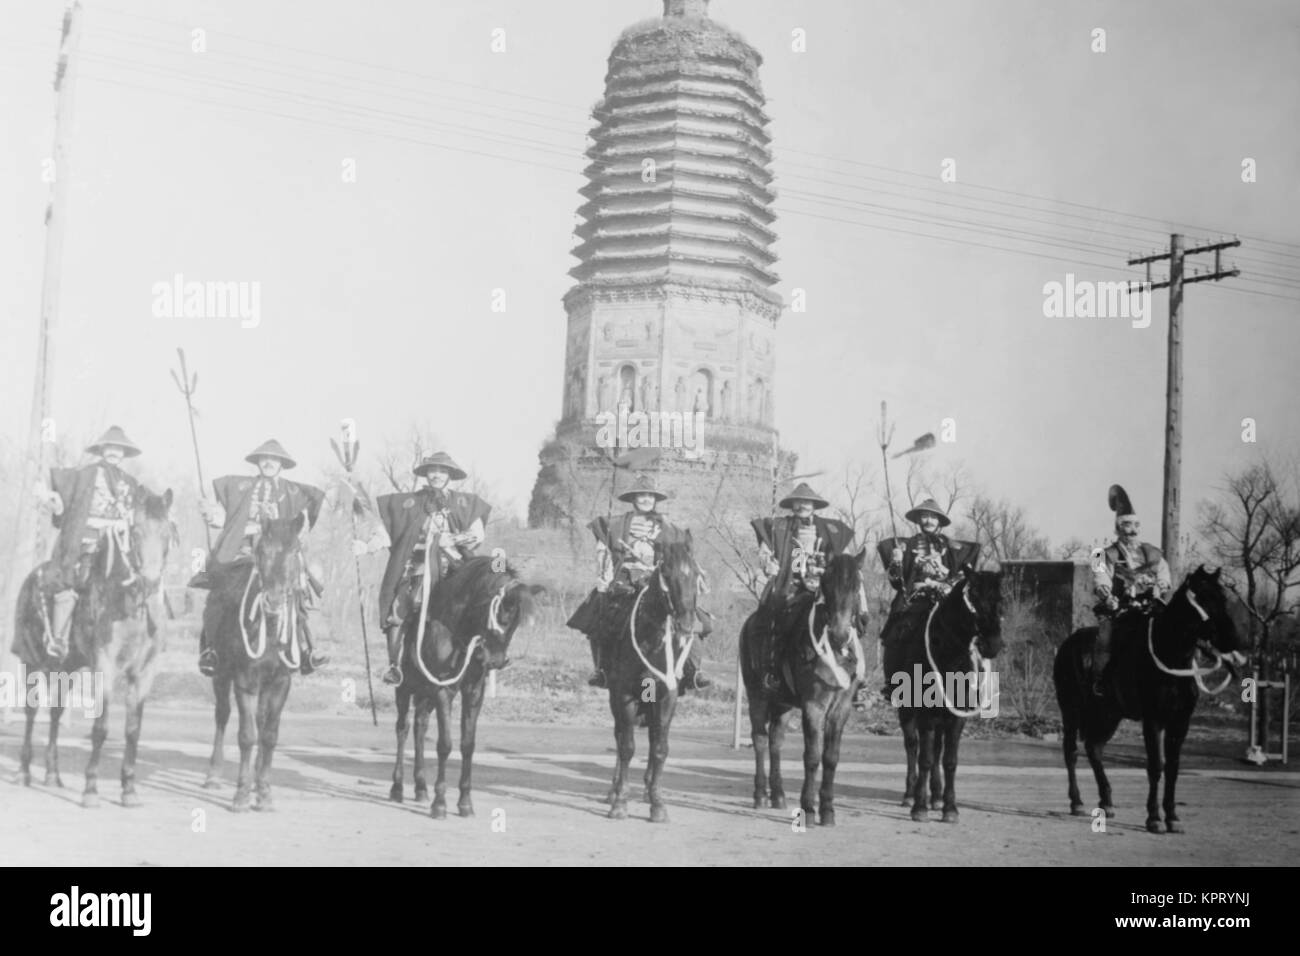 7 gendarmes Chinois a atteint un sommet dans les chapeaux sont montés comme des escarmouches de cavalerie comme devant un temple. Banque D'Images